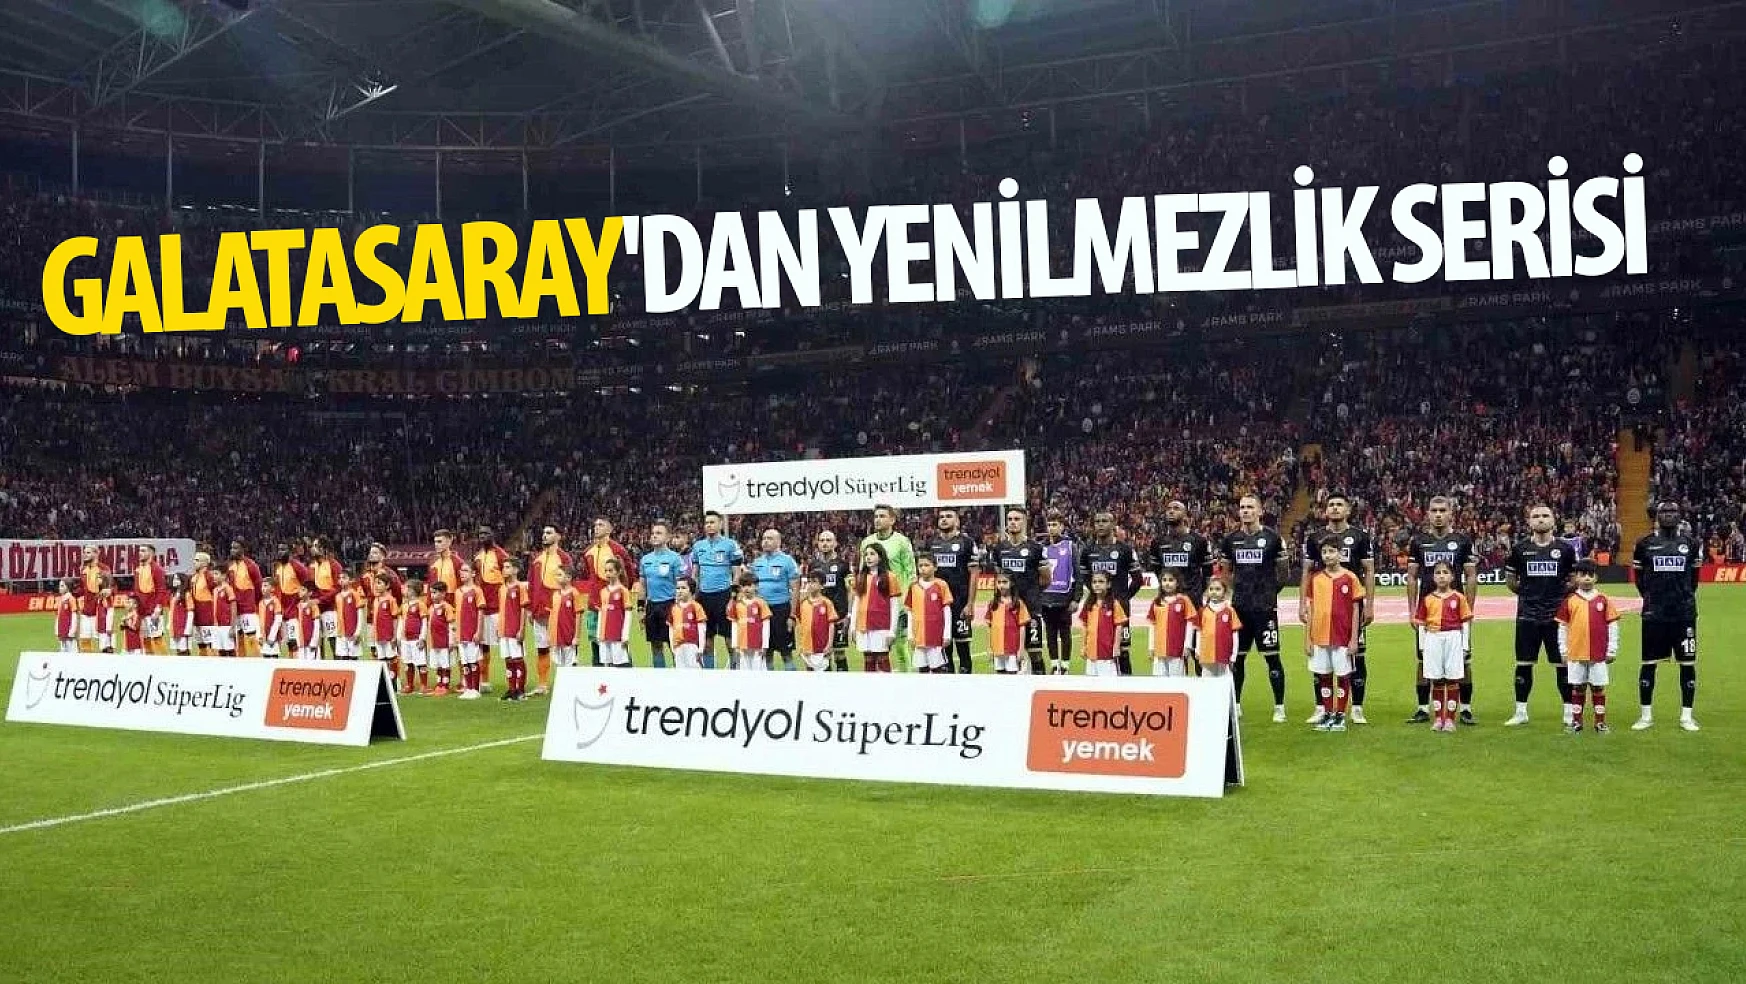 Galatasaray'dan yenilmezlik serisi